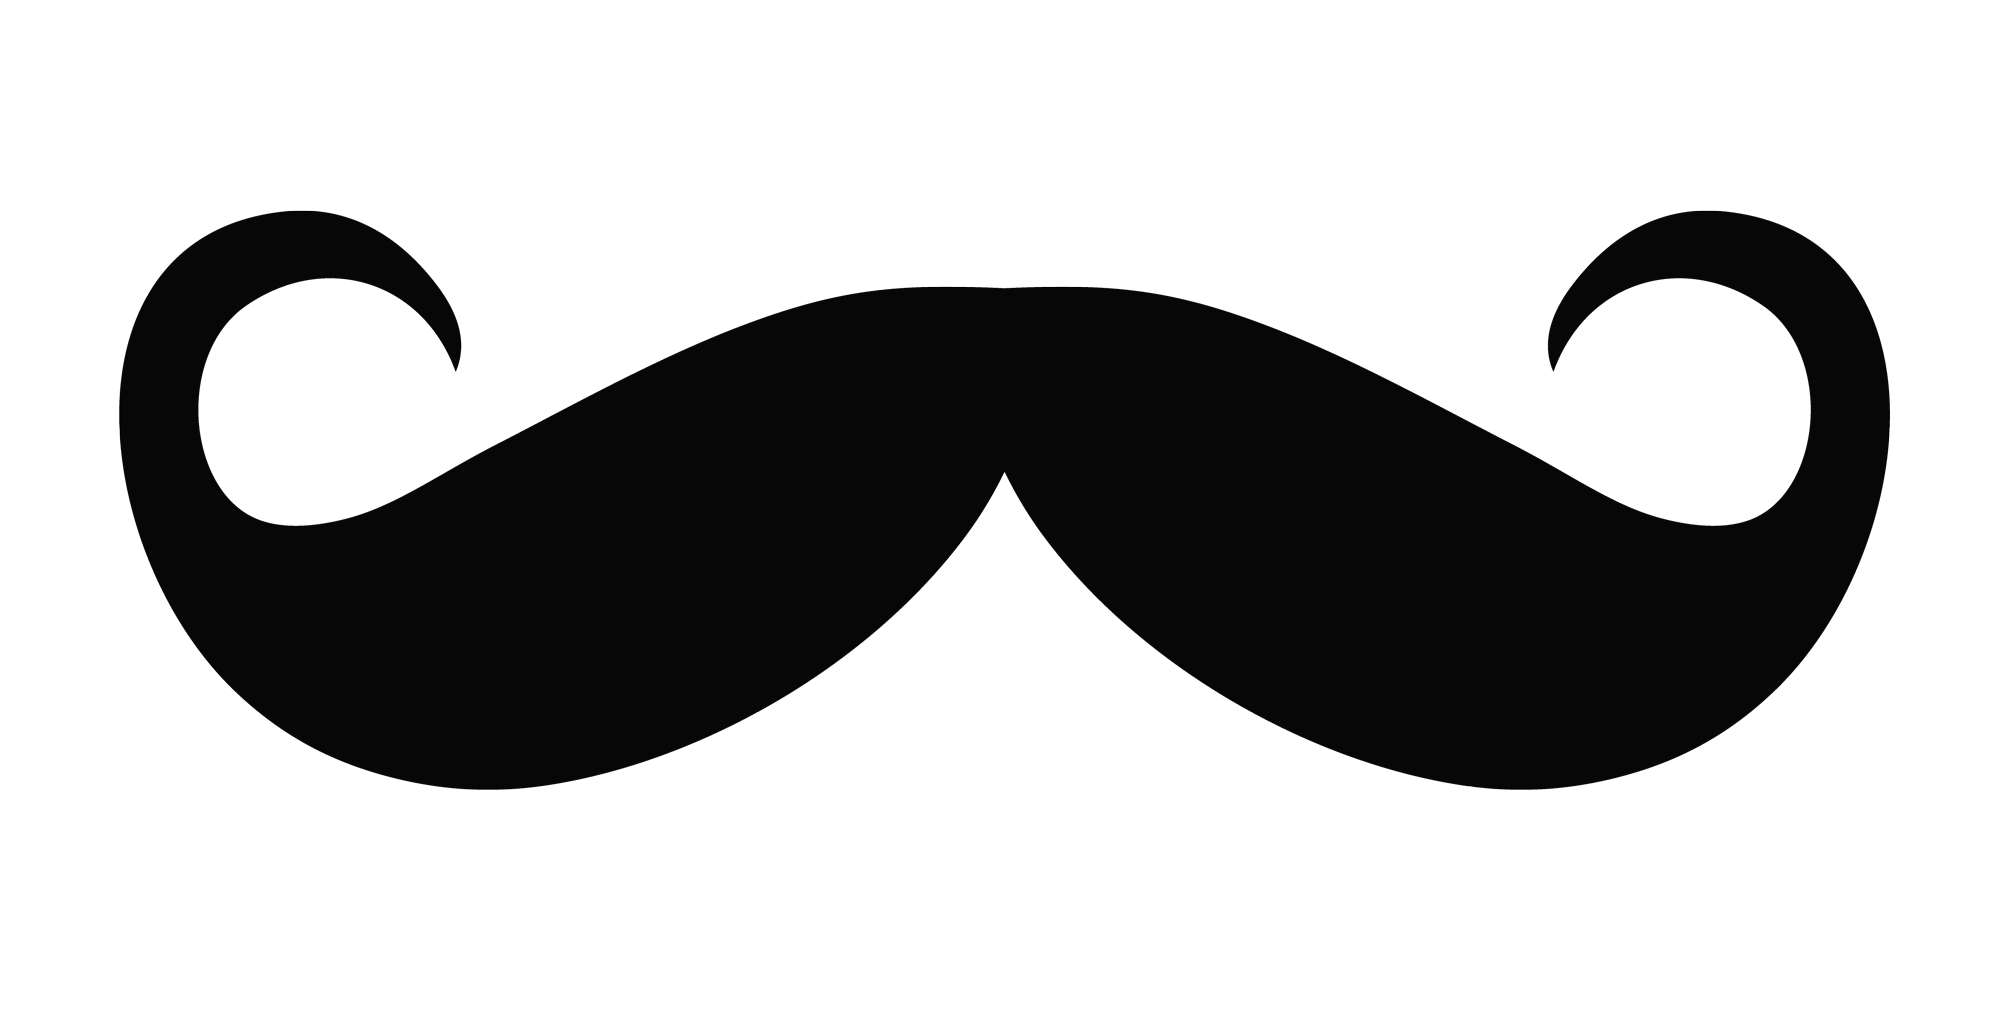 Moustache PNG Image Transparent Background